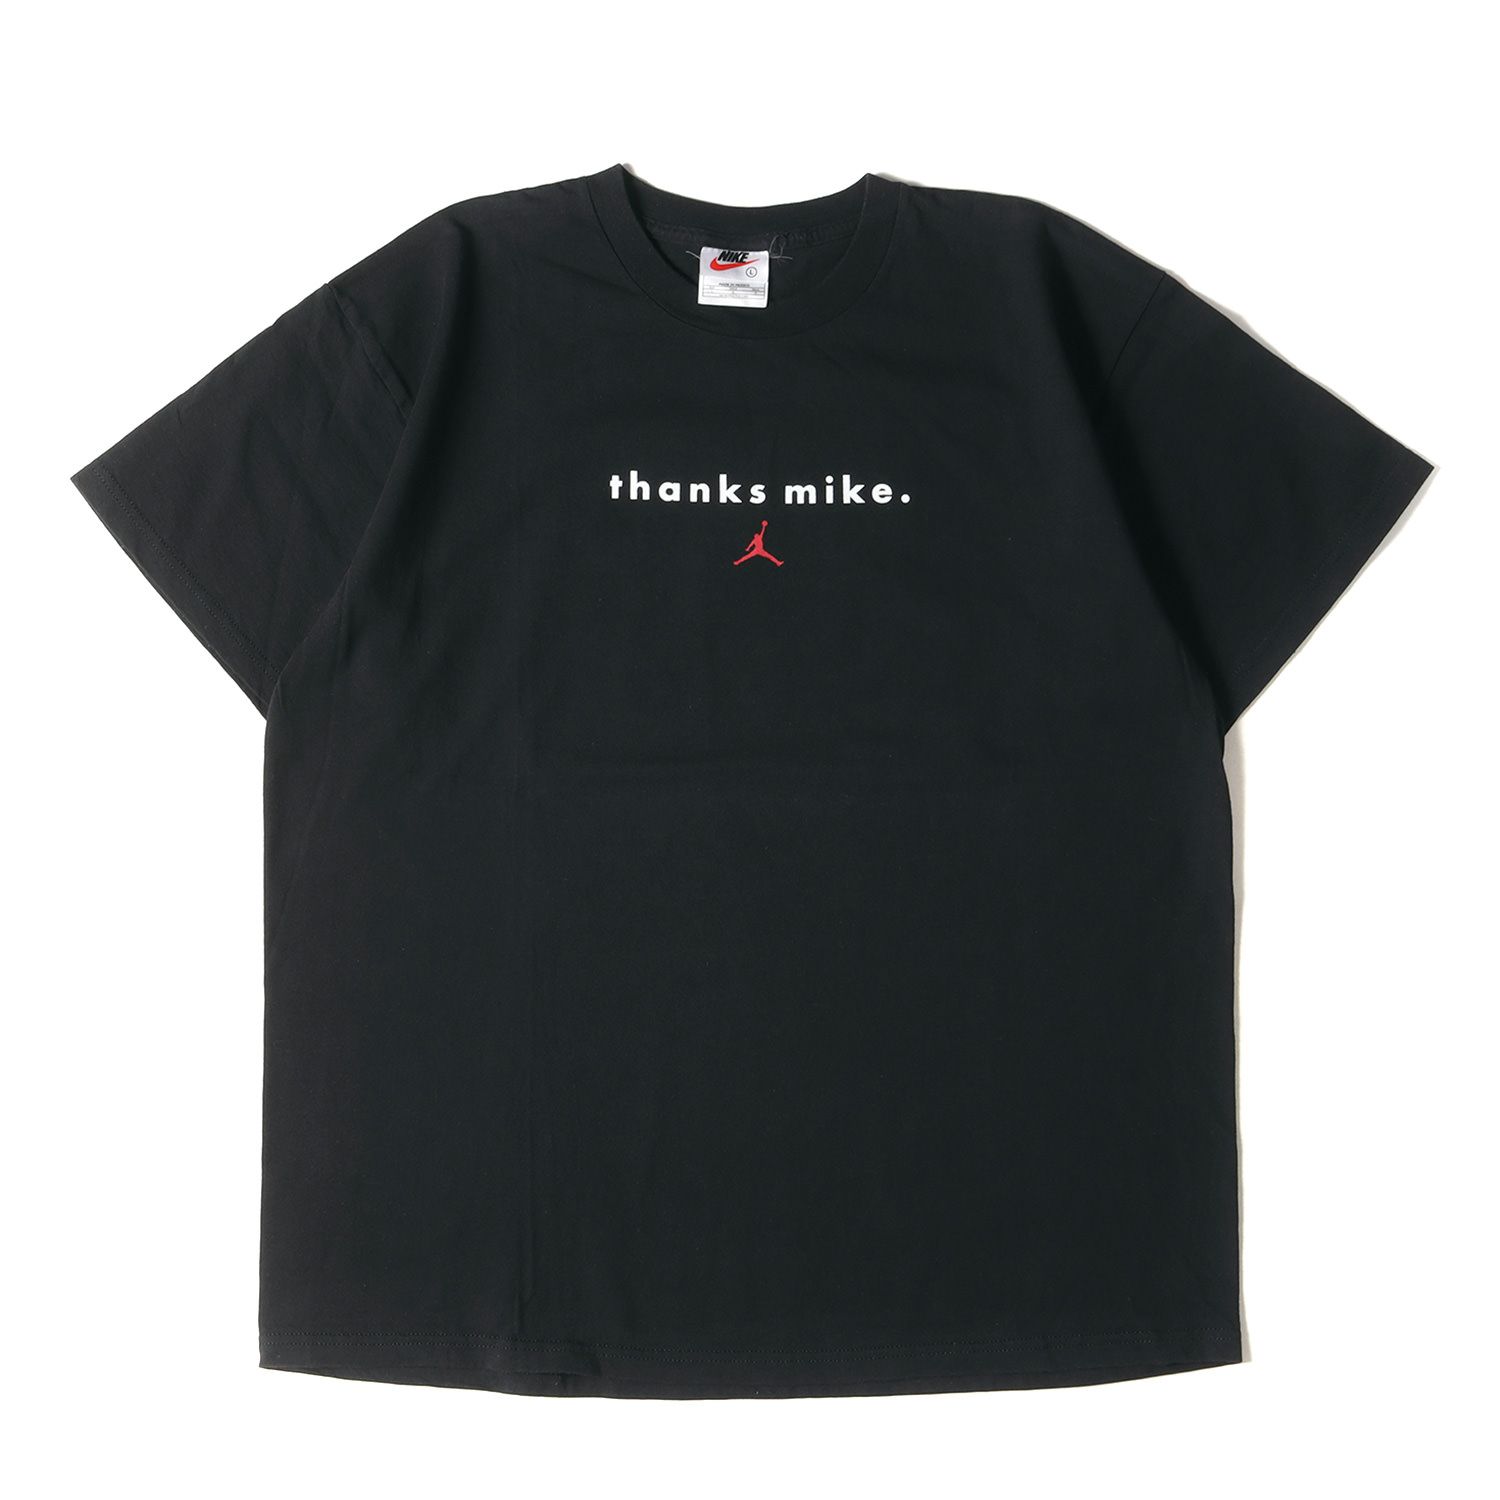 NIKE ナイキ Tシャツ サイズ:L 90s マイケル・ジョーダン クルーネック 半袖Tシャツ 1998年モデル ブラック 黒 90年代  vintage ヴィンテージ 古着 トップス カットソー【メンズ】